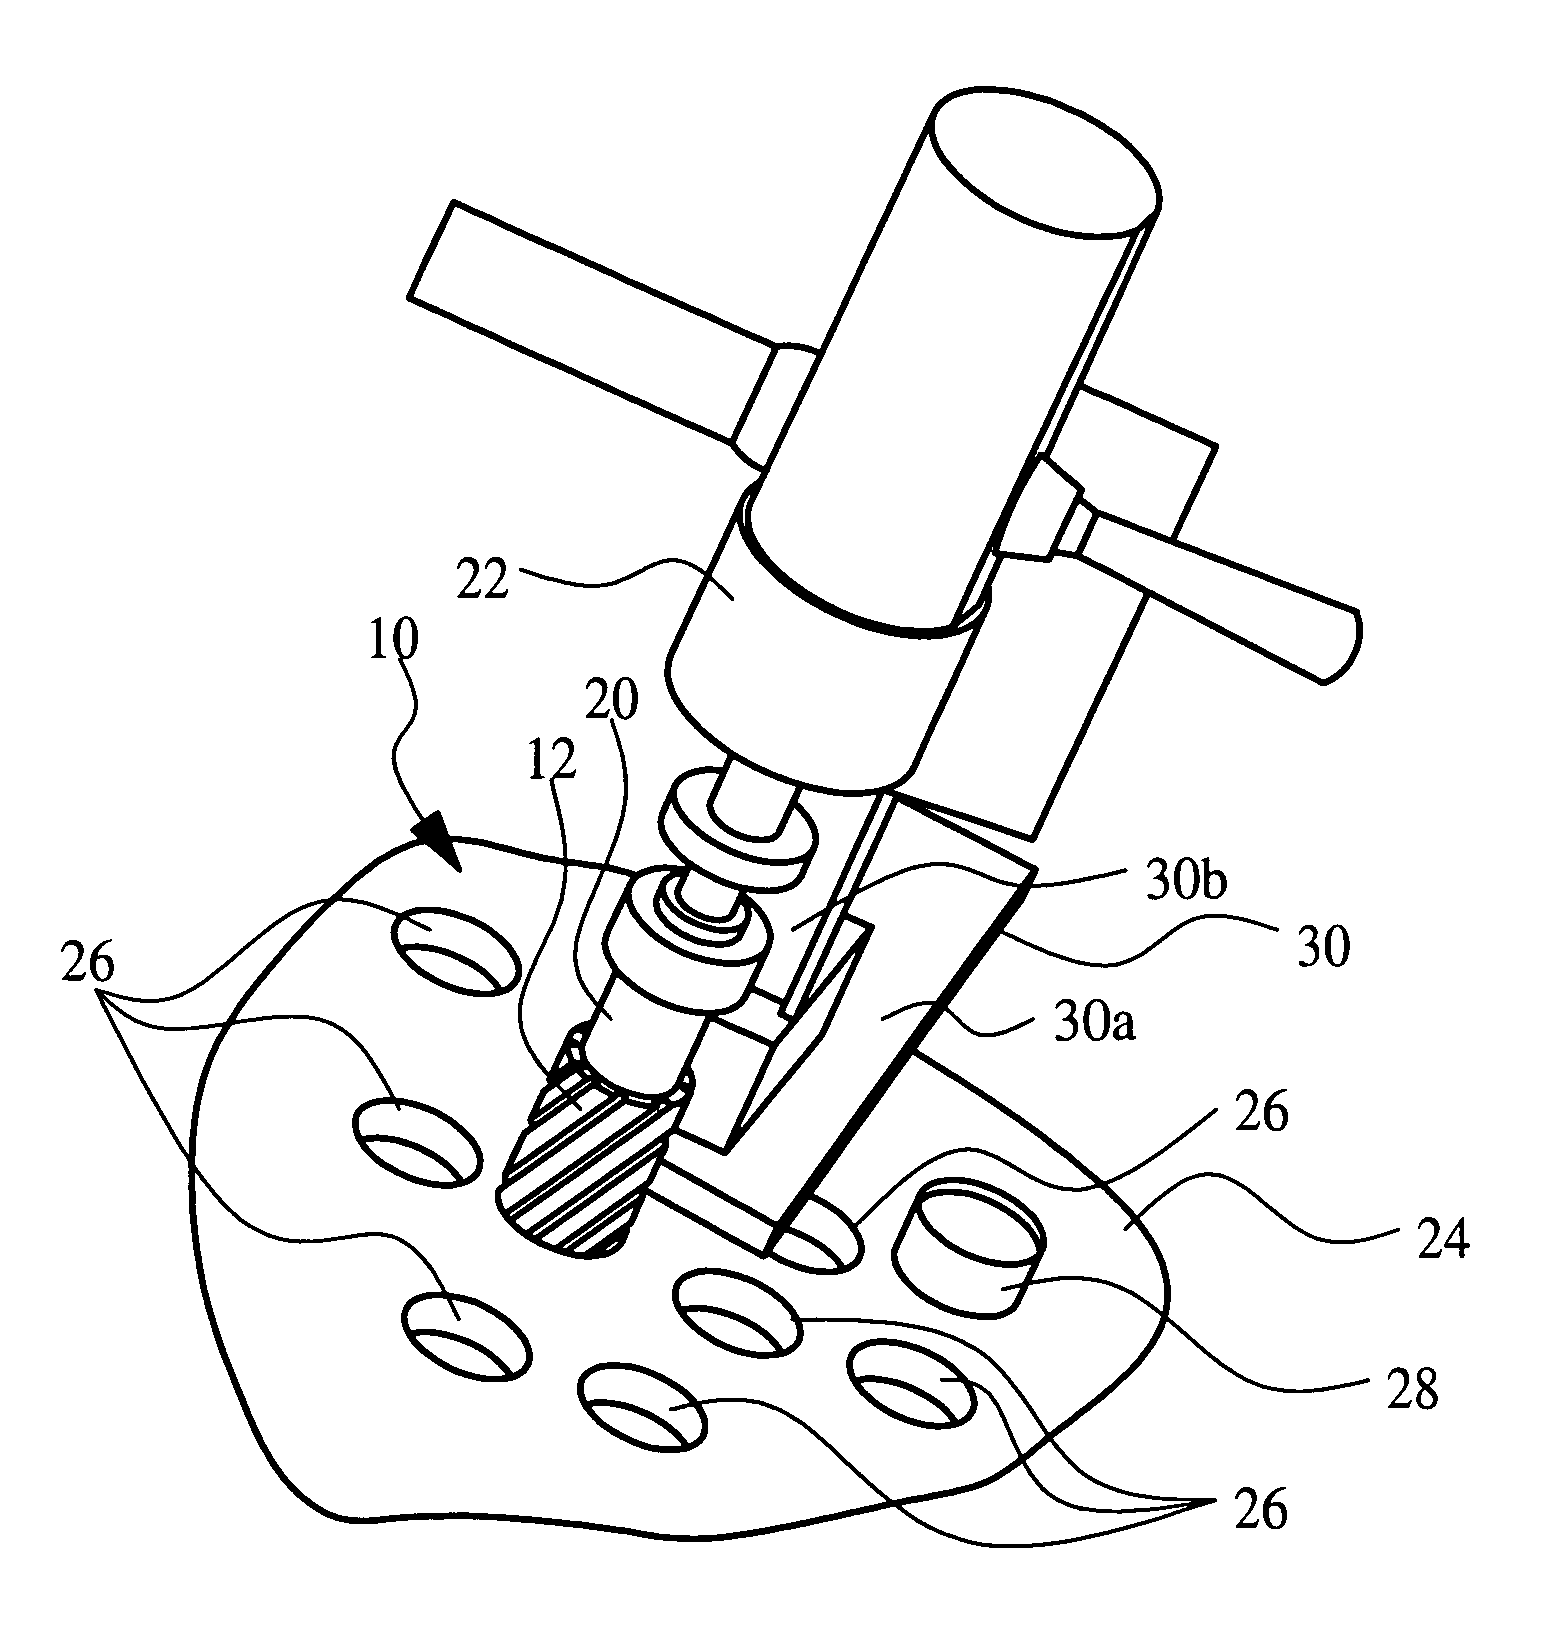 Method of removing boiler tubes